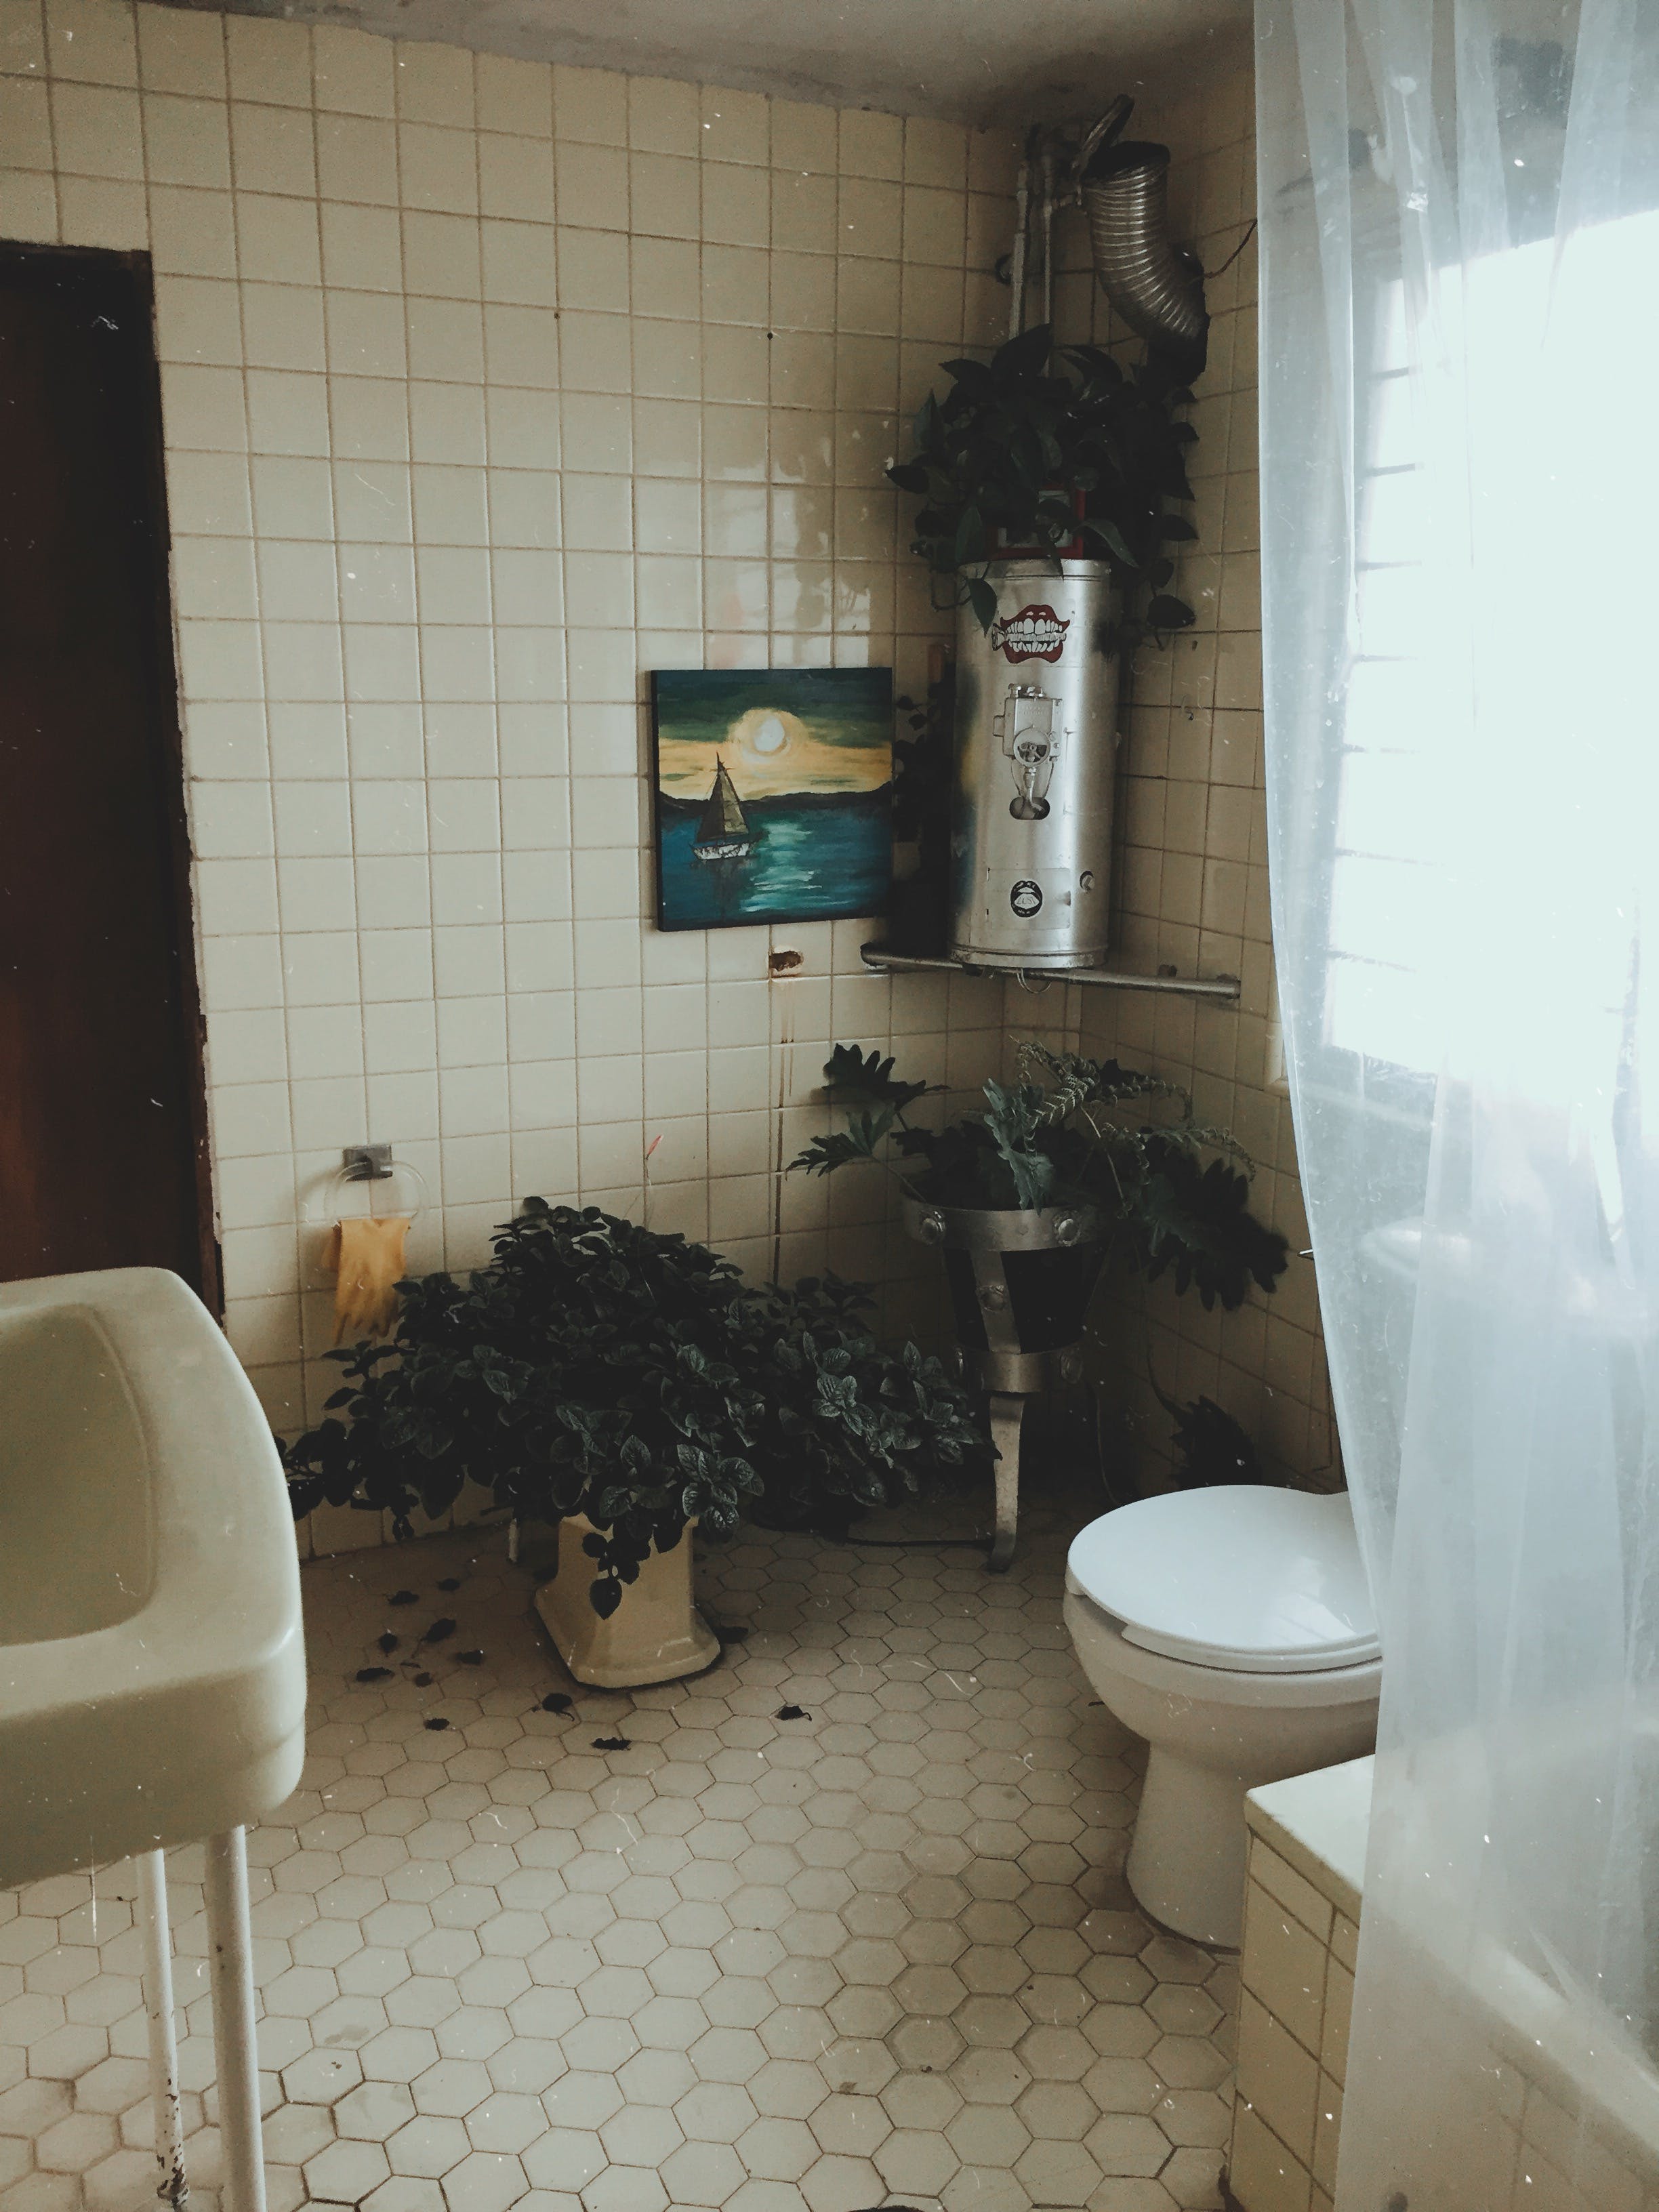 Vue d'une salle de bain avec des toilettes et un lavabo | Source : Pexels